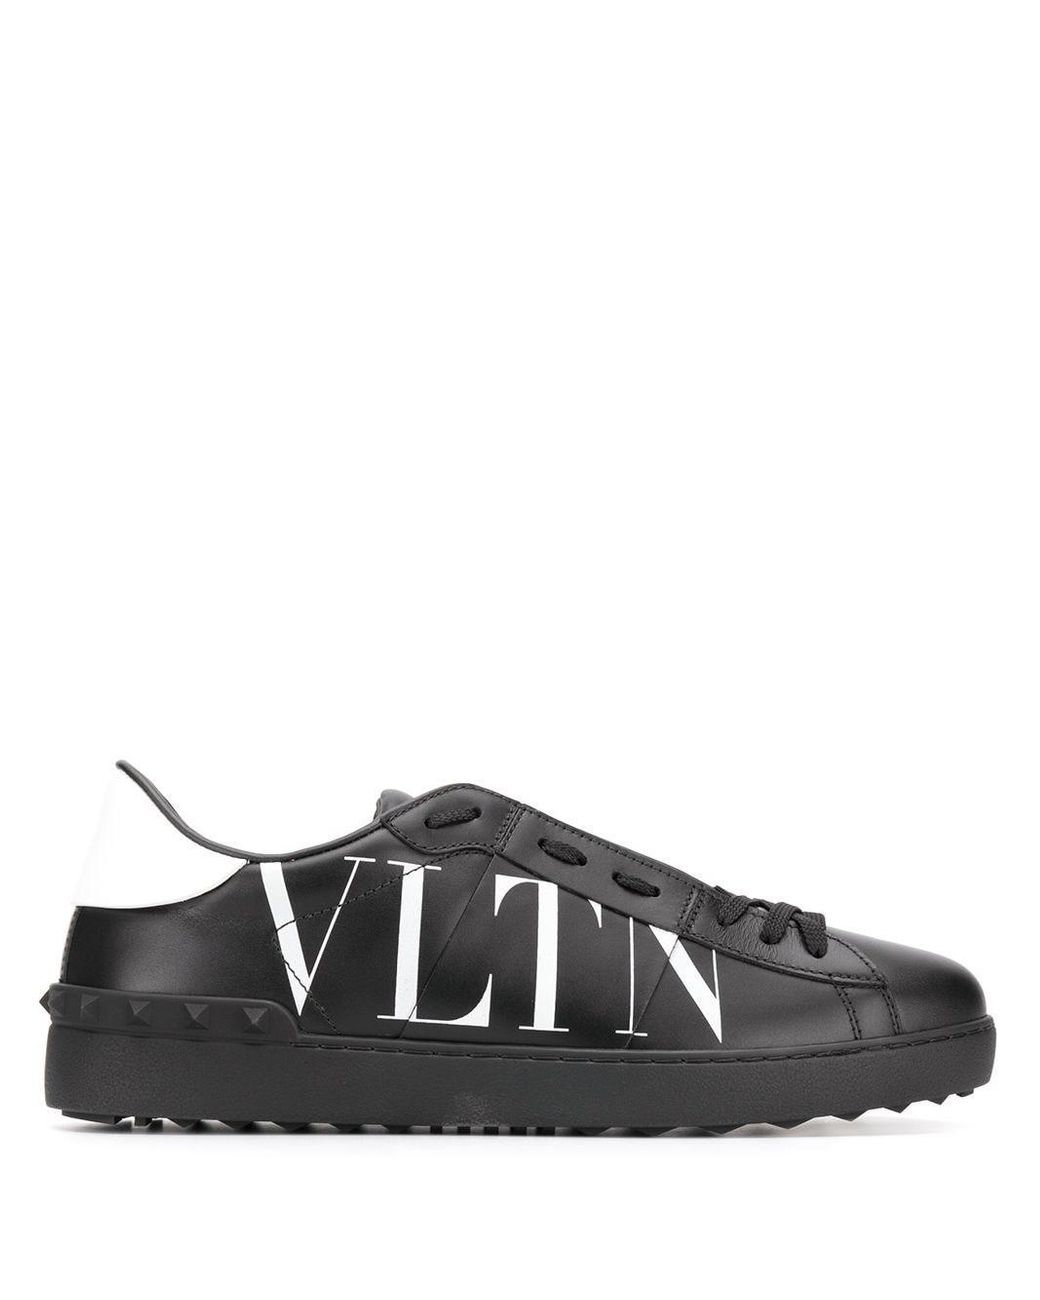 Valentino Garavani Logo Sneakers in Black for Men - Lyst